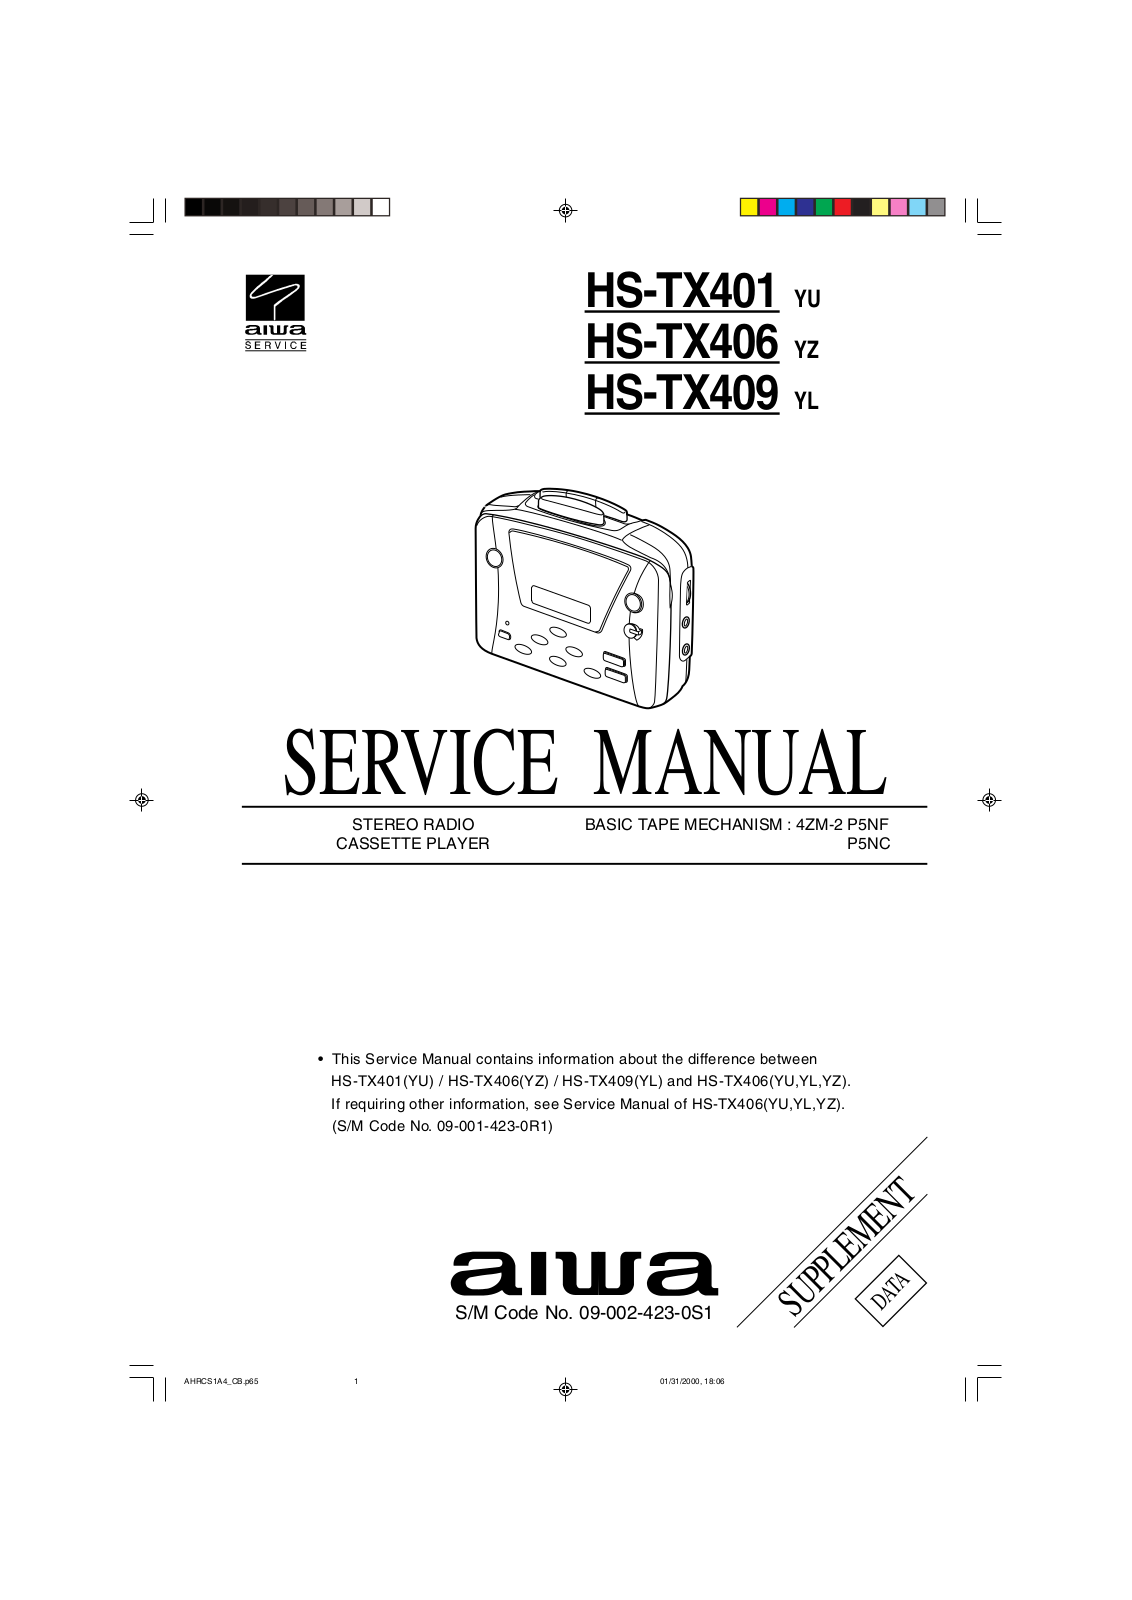 Aiwa HS-TX406, HS TX401, HS-TX409 Service Manual